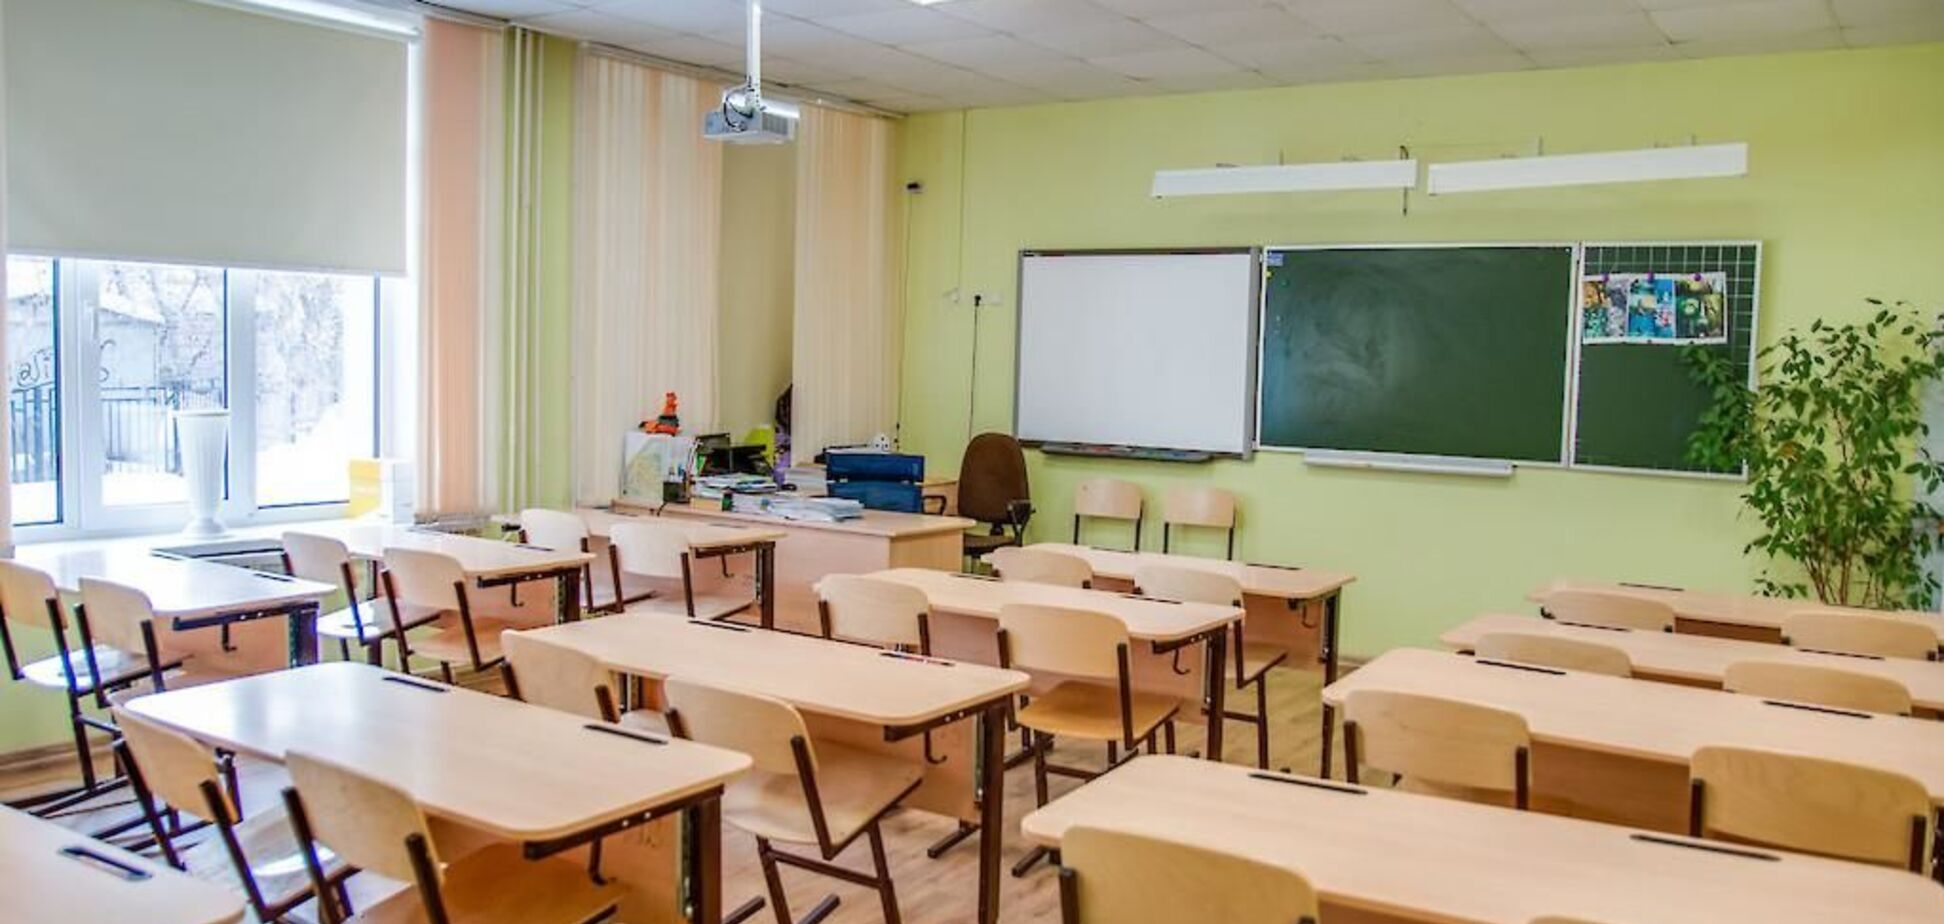 У школах України проведуть аудит: з'явився список перших 'жертв'